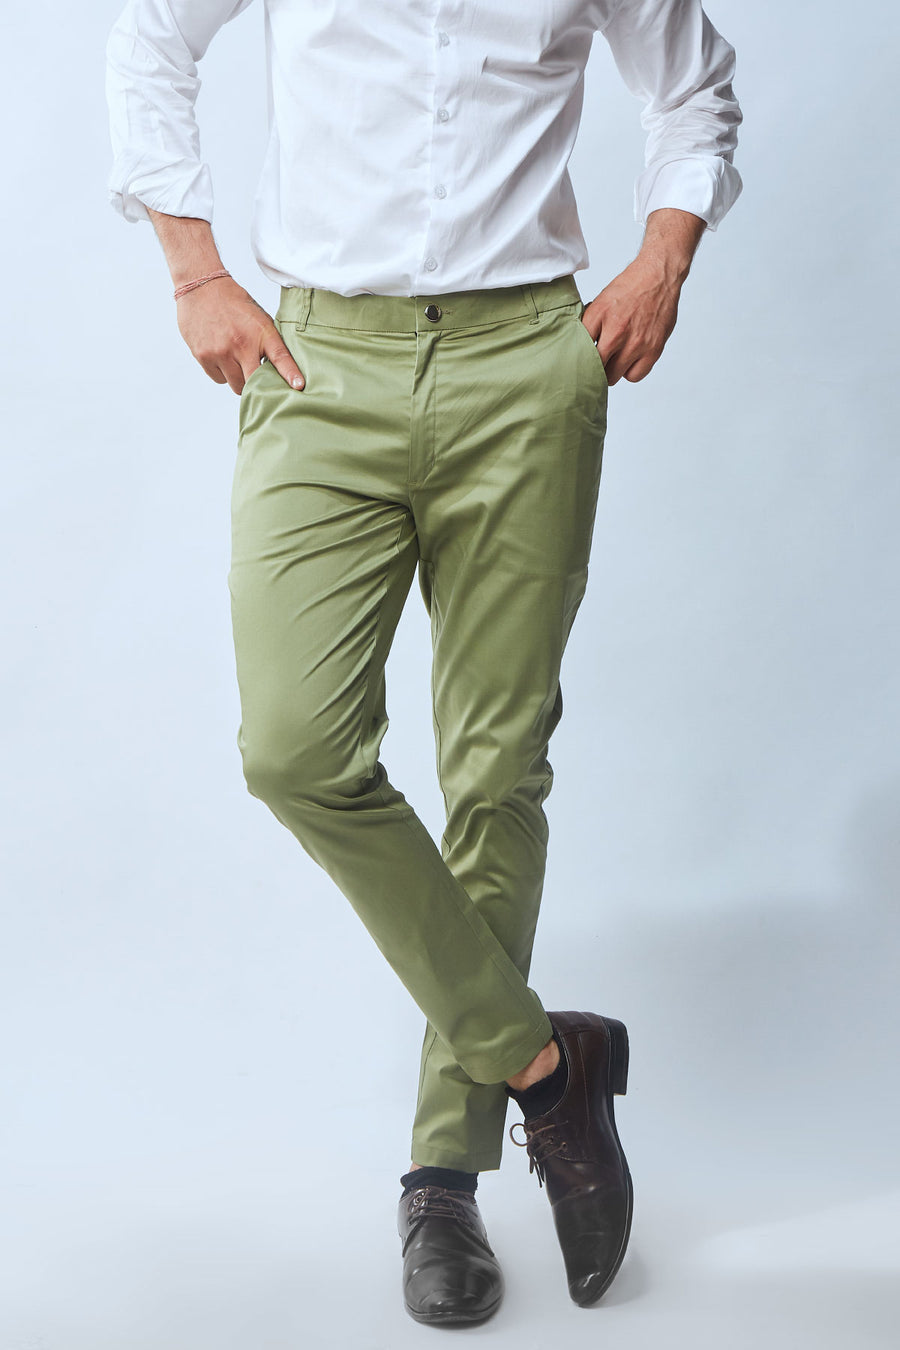 Buy Air Summer Green Trouser | Best Men's Summer Shorts | Beyours